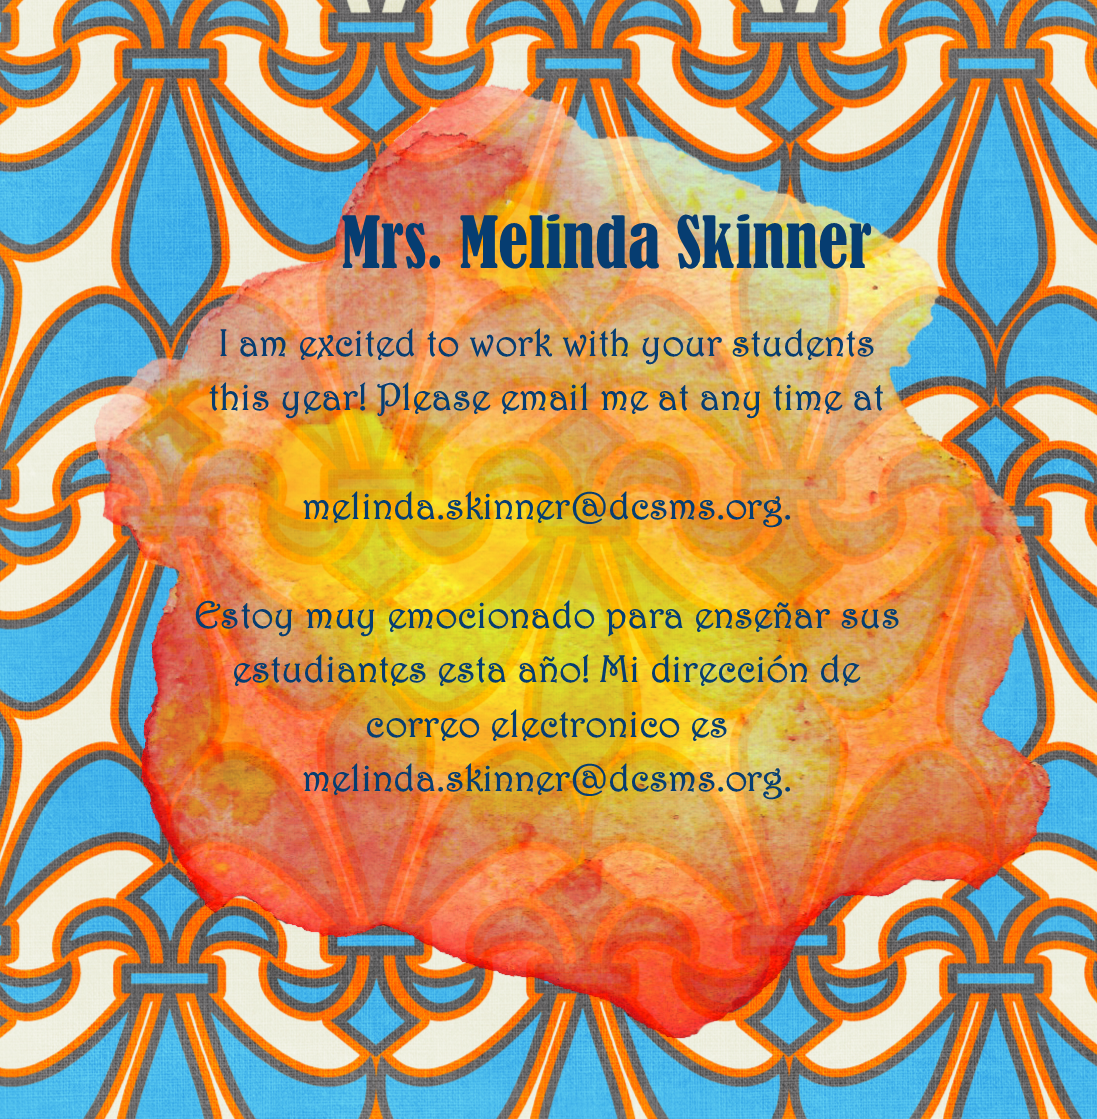 Mrs. Melinda Skinner